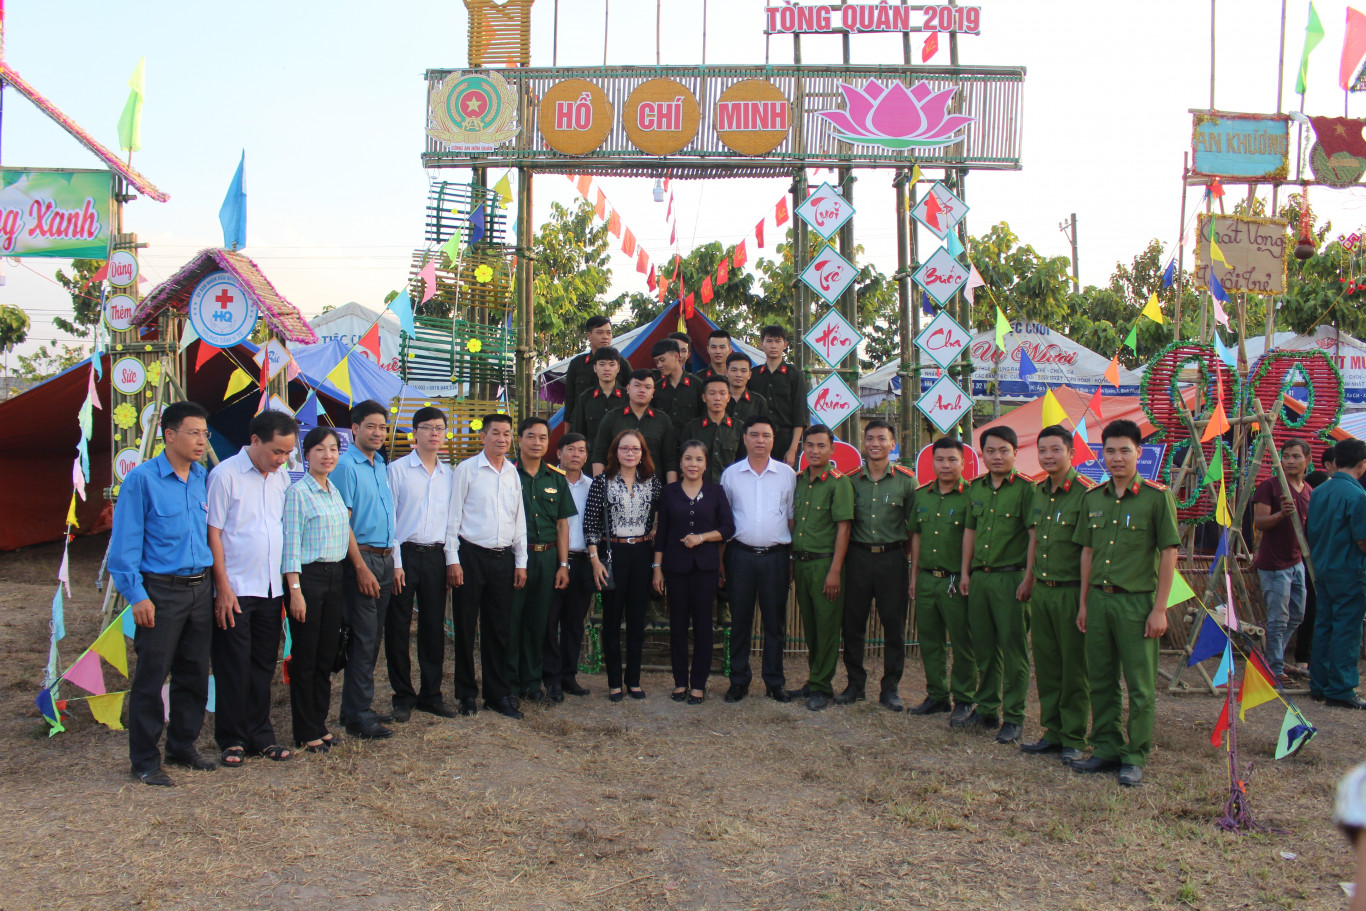 Đồng chí Nguyễn Thị Xuân Hòa - TUV, Bí thư Huyện ủy và đ/c Vũ Long Sơn - Phó Chủ tịch UBND huyện trao cờ lưu niệm cho các đơn vị tham gia hội trại.